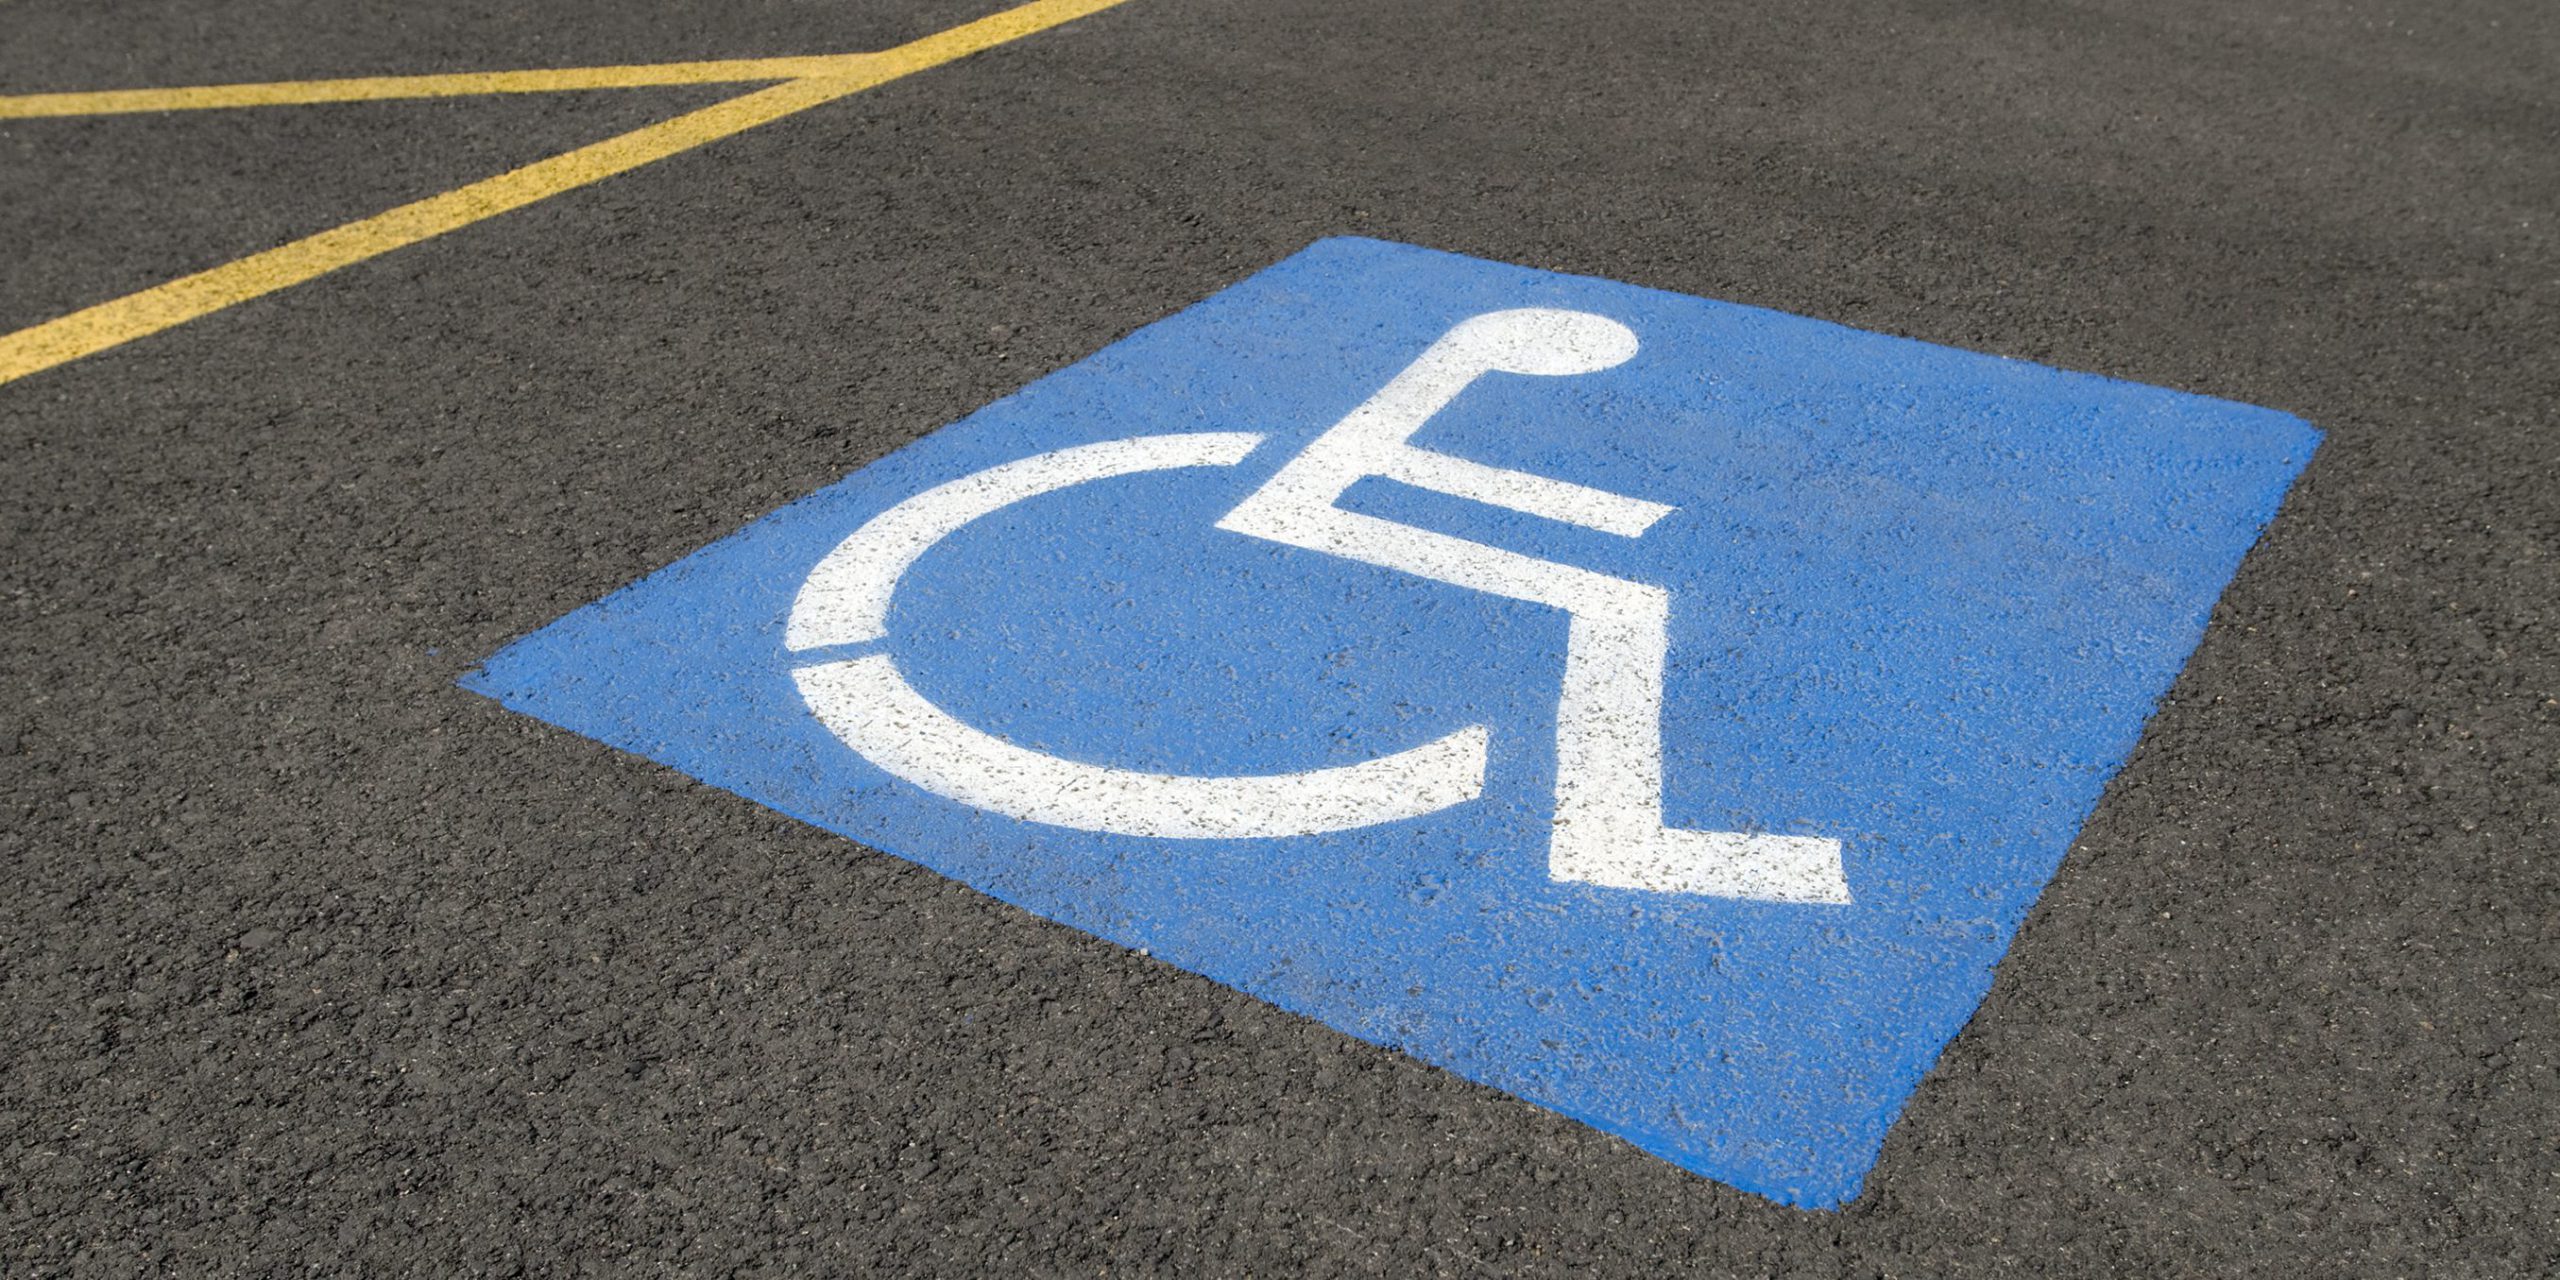 New Partnership Benefits Disability Community